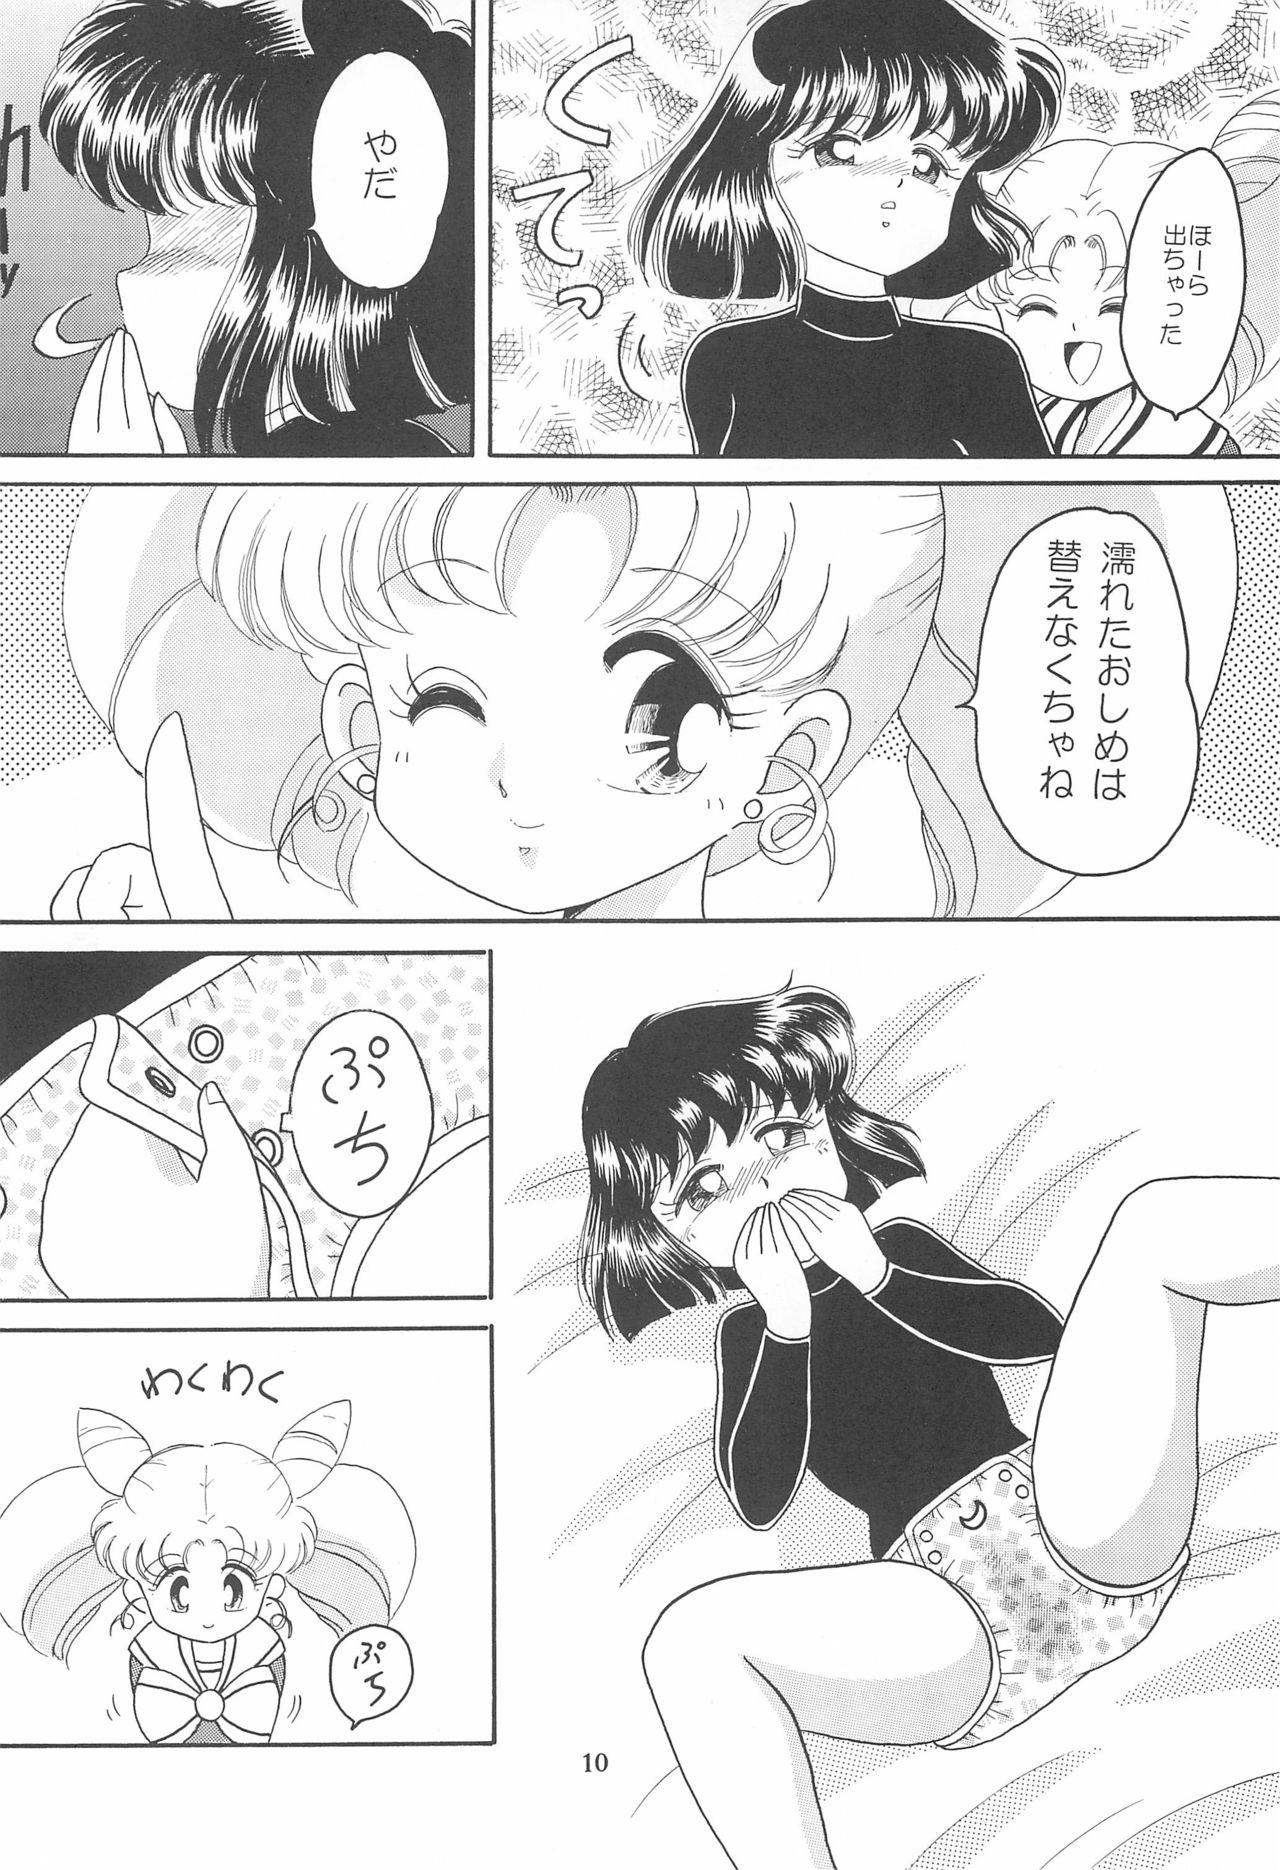 Safada Ponponpon 6 - Sailor moon | bishoujo senshi sailor moon Hd Porn - Page 12